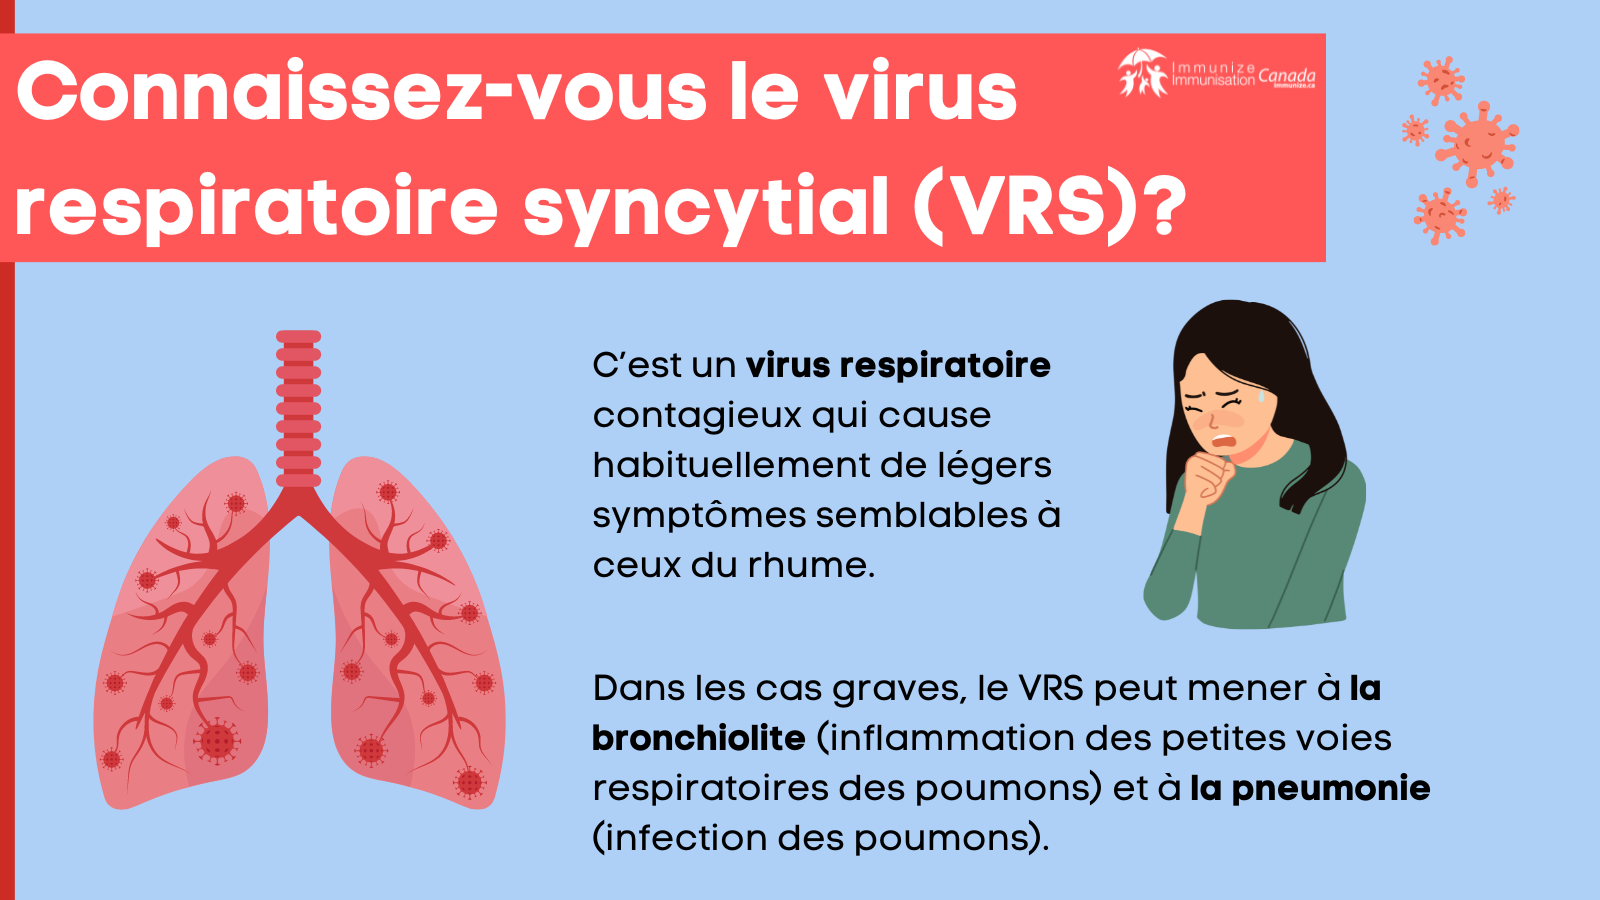 Connaissez-vous le virus respiratoire syncytial (VRS)? - image 1 pour Twitter